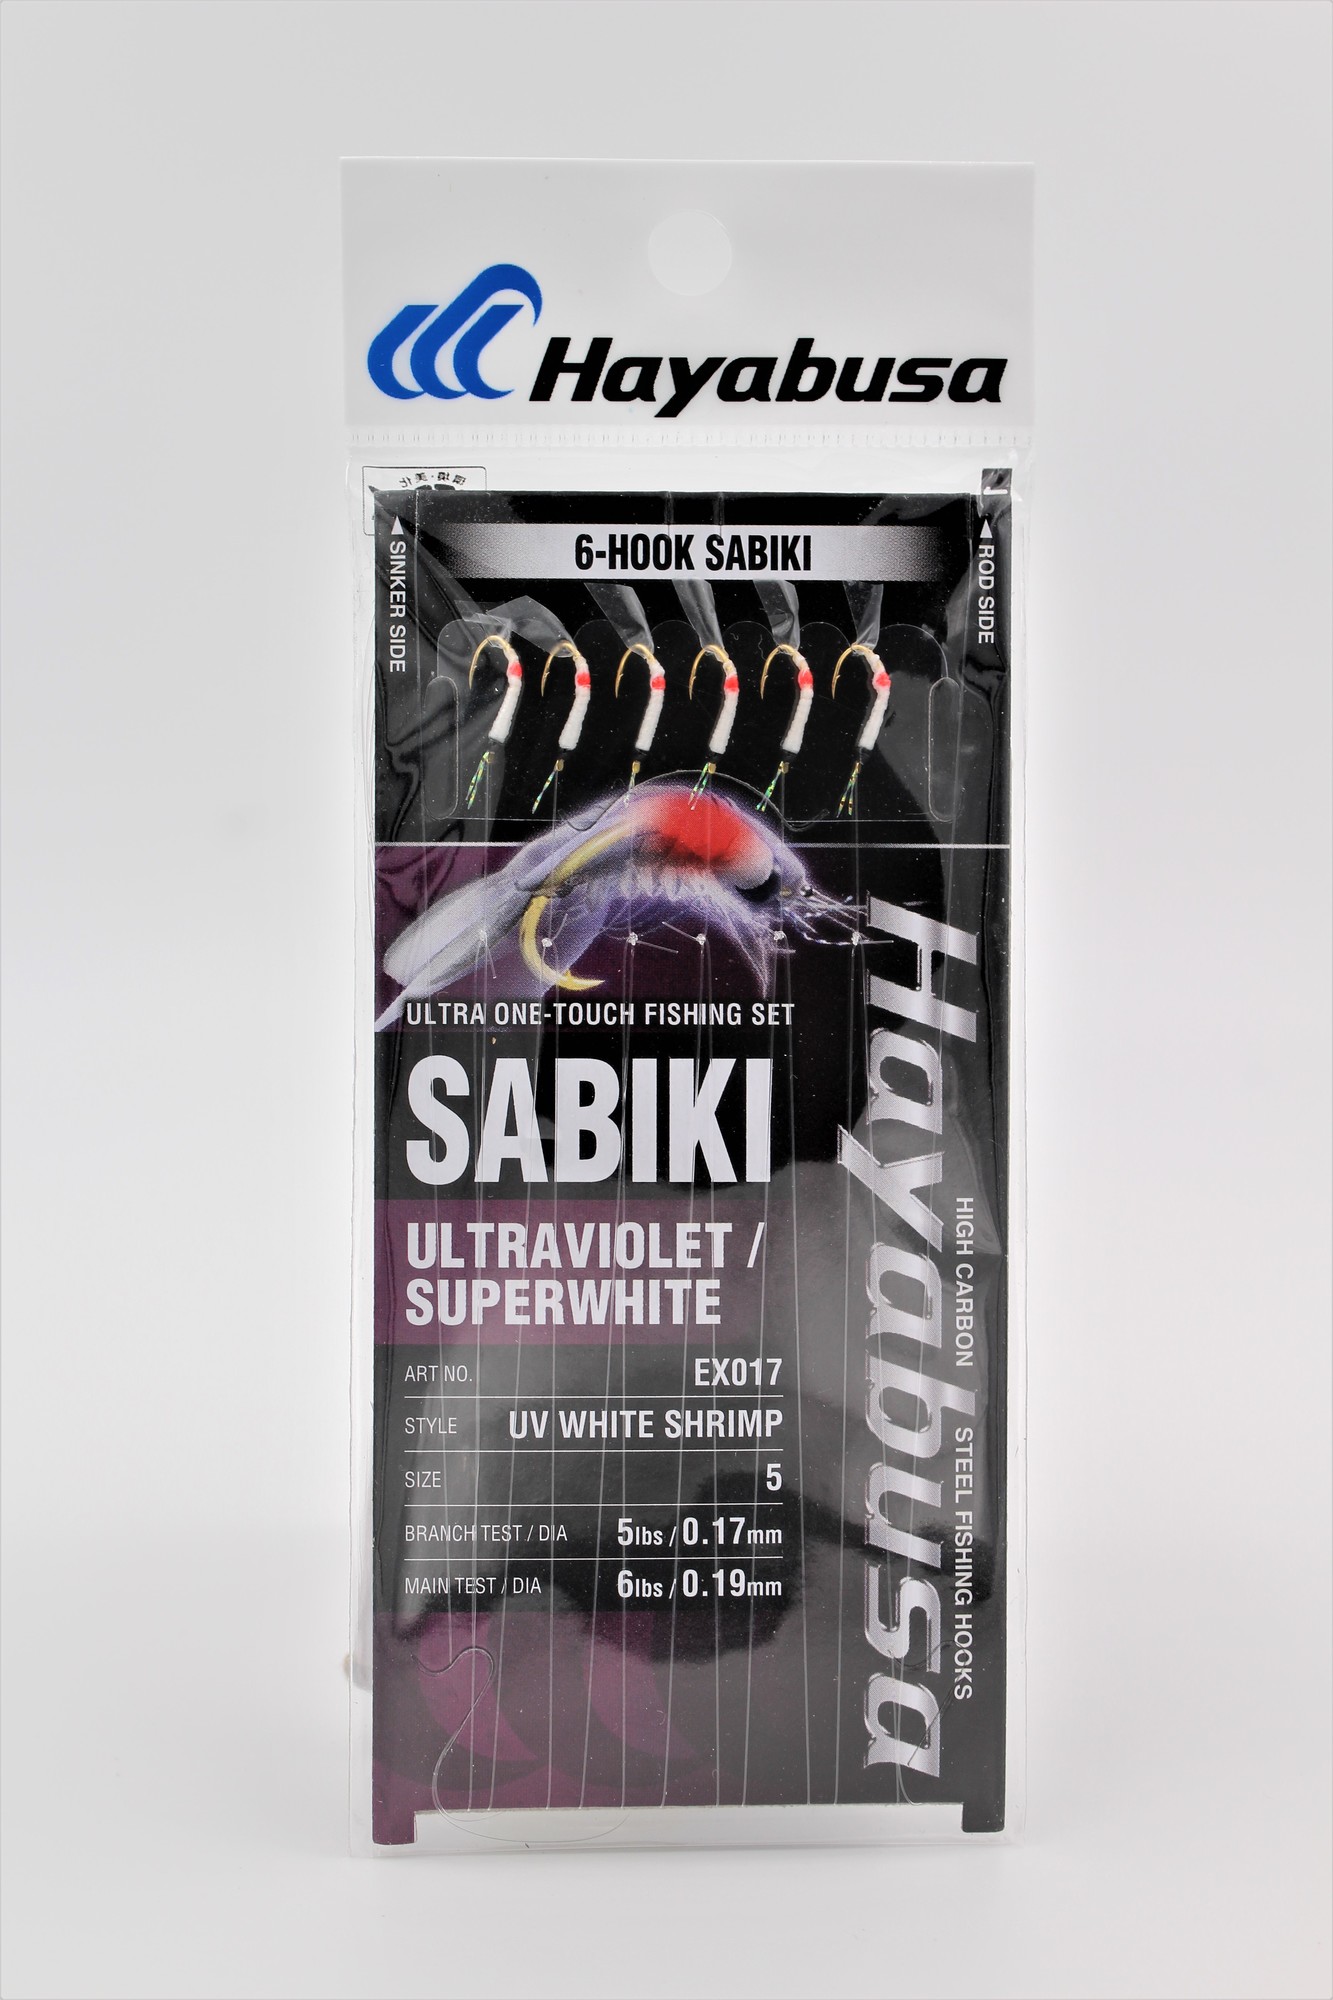 Hayabusa Uv White Shrimp 6-Hook Sabiki, 1 Rig, 1Pc